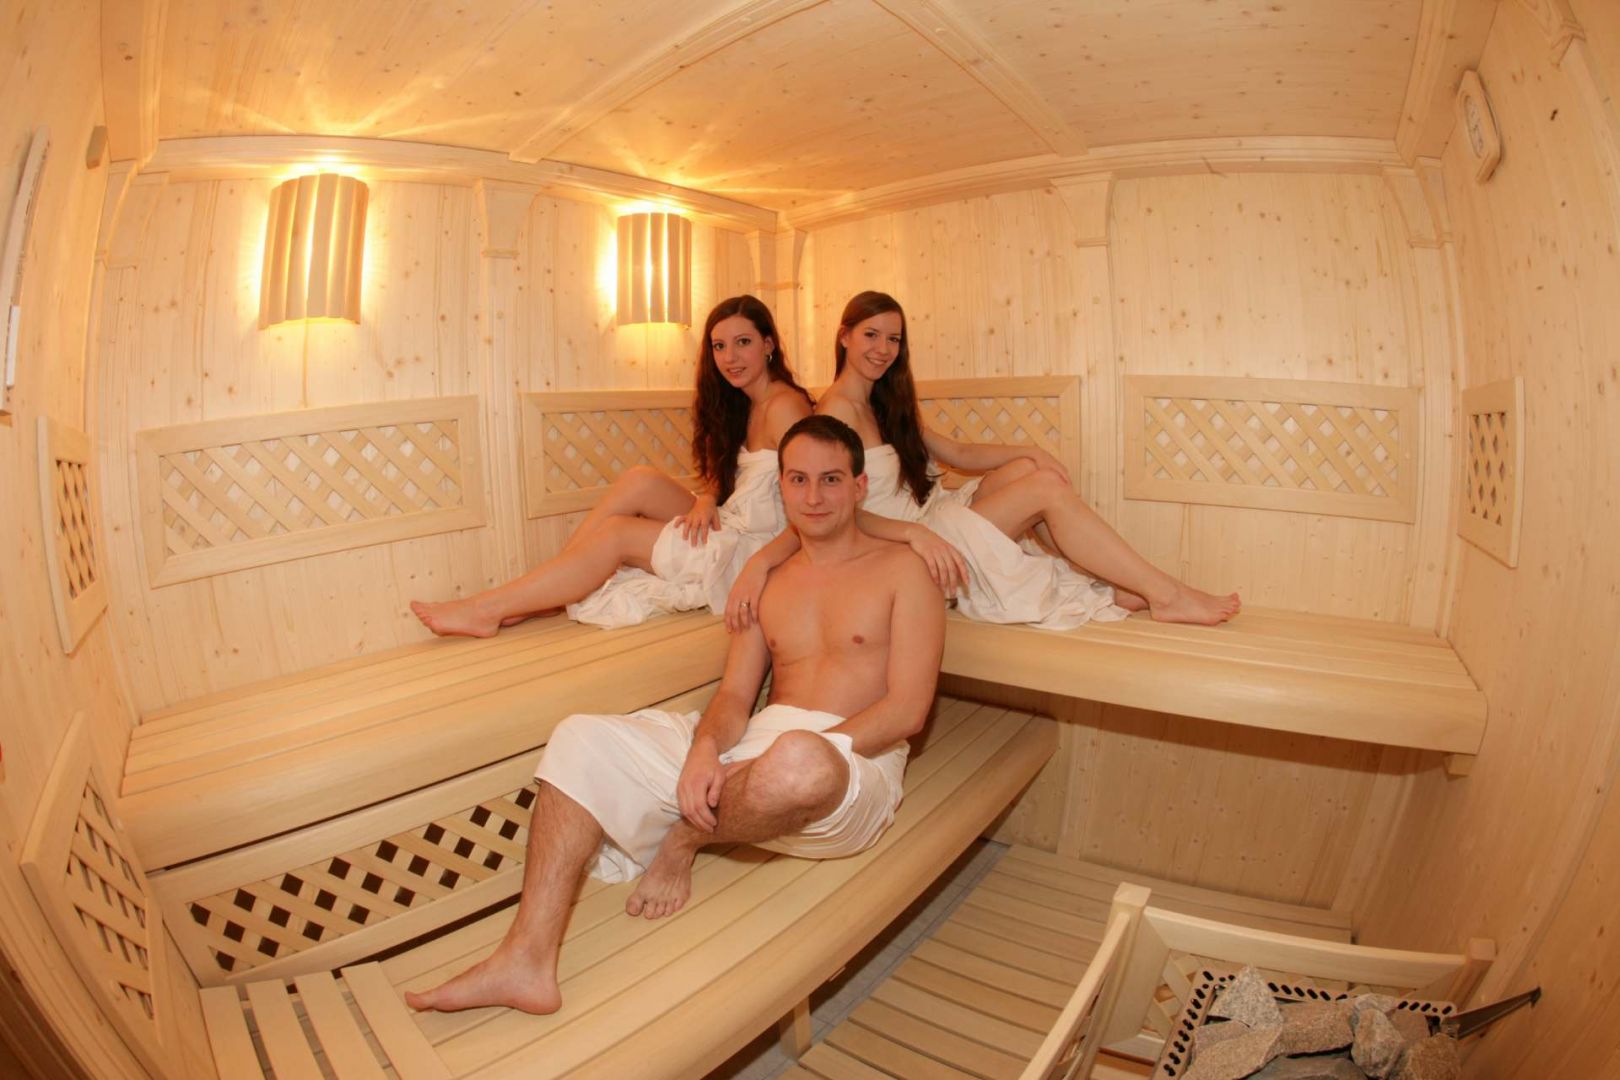 Geil und nackt in der sauna - 🧡 ᐅ ᐅ) Sex in der Sauna ❤.